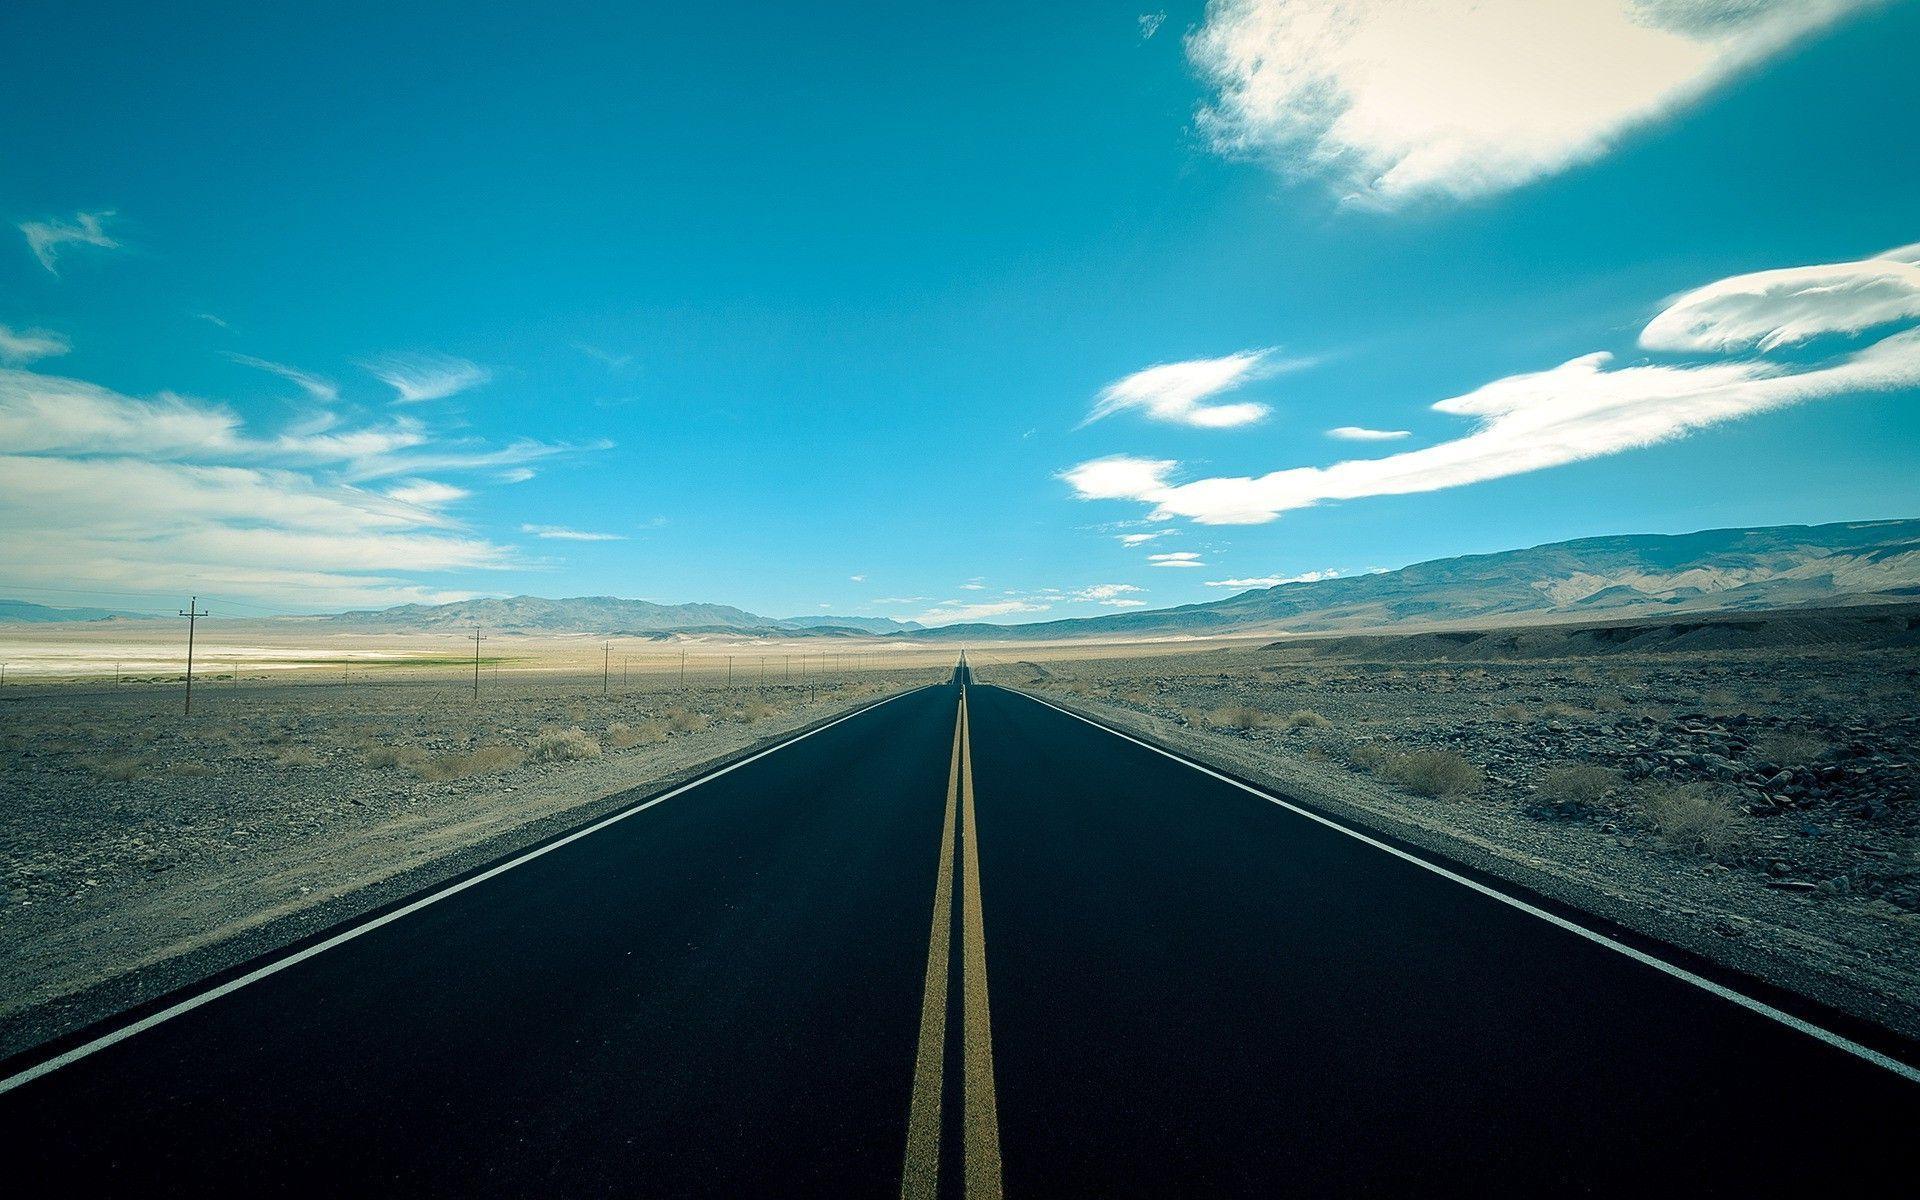 Long desert road